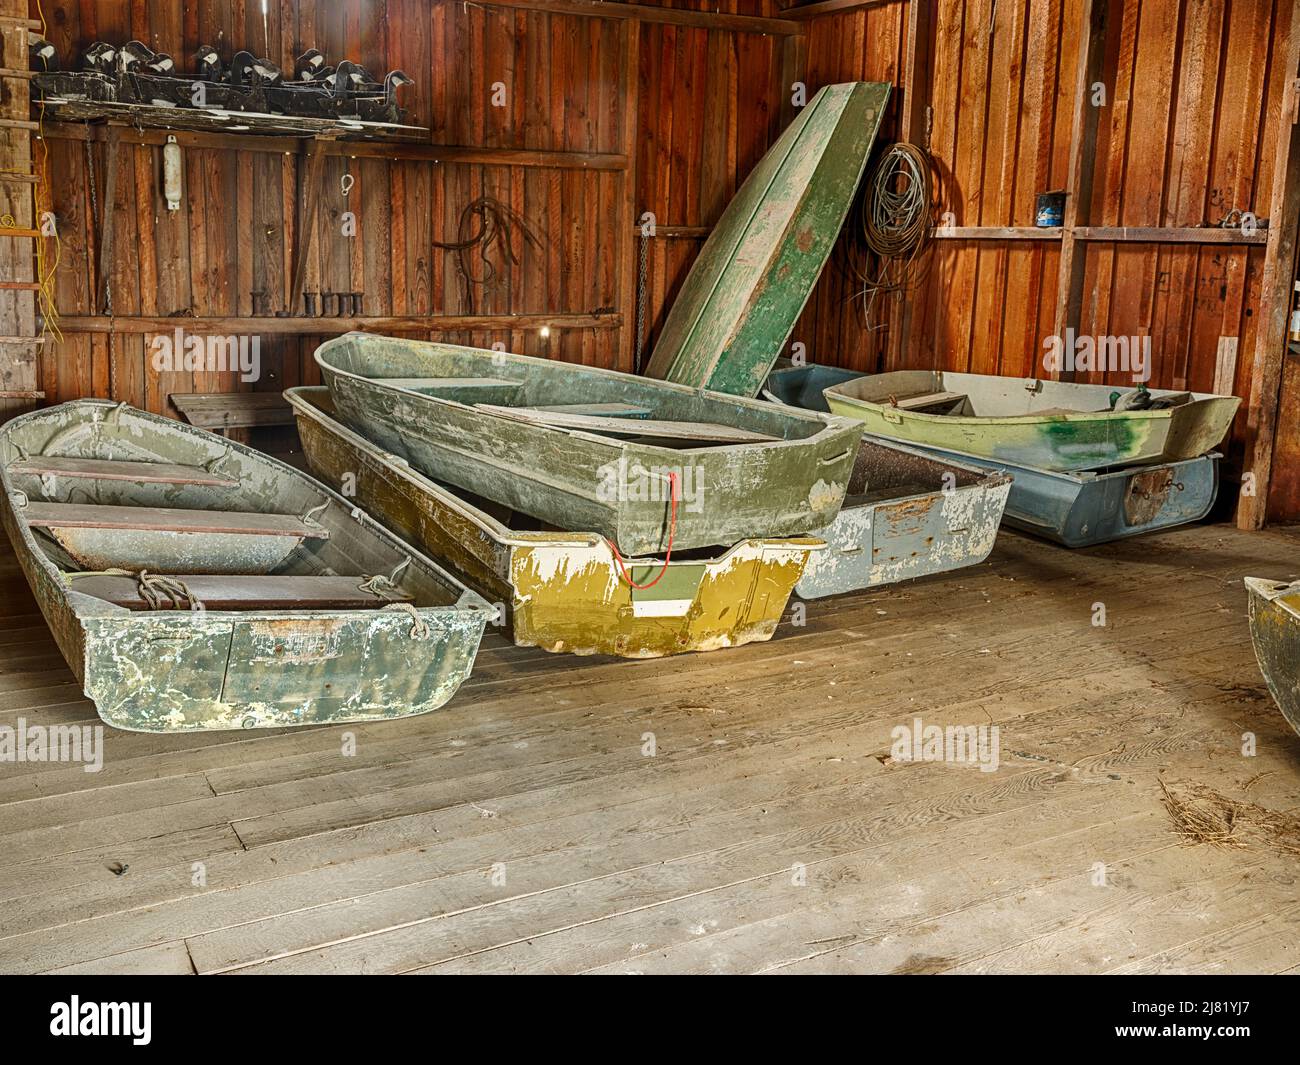 Une petite flotte de petits bateaux est stockée à l'intérieur d'une ancienne hangar à bateaux en bois. Banque D'Images